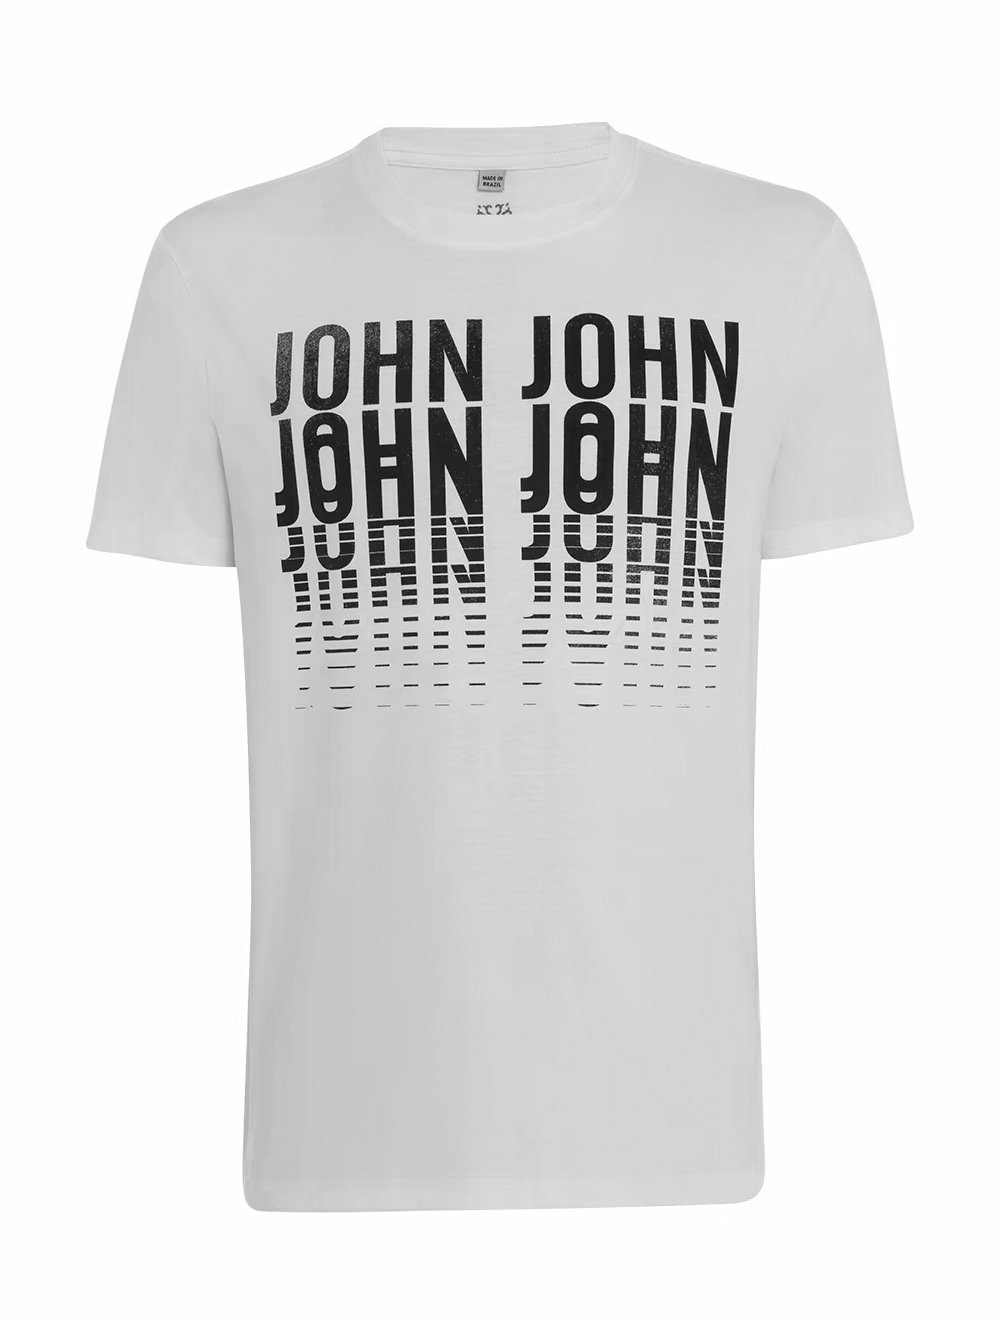 Camiseta John John Cruise Branca - Compre Agora